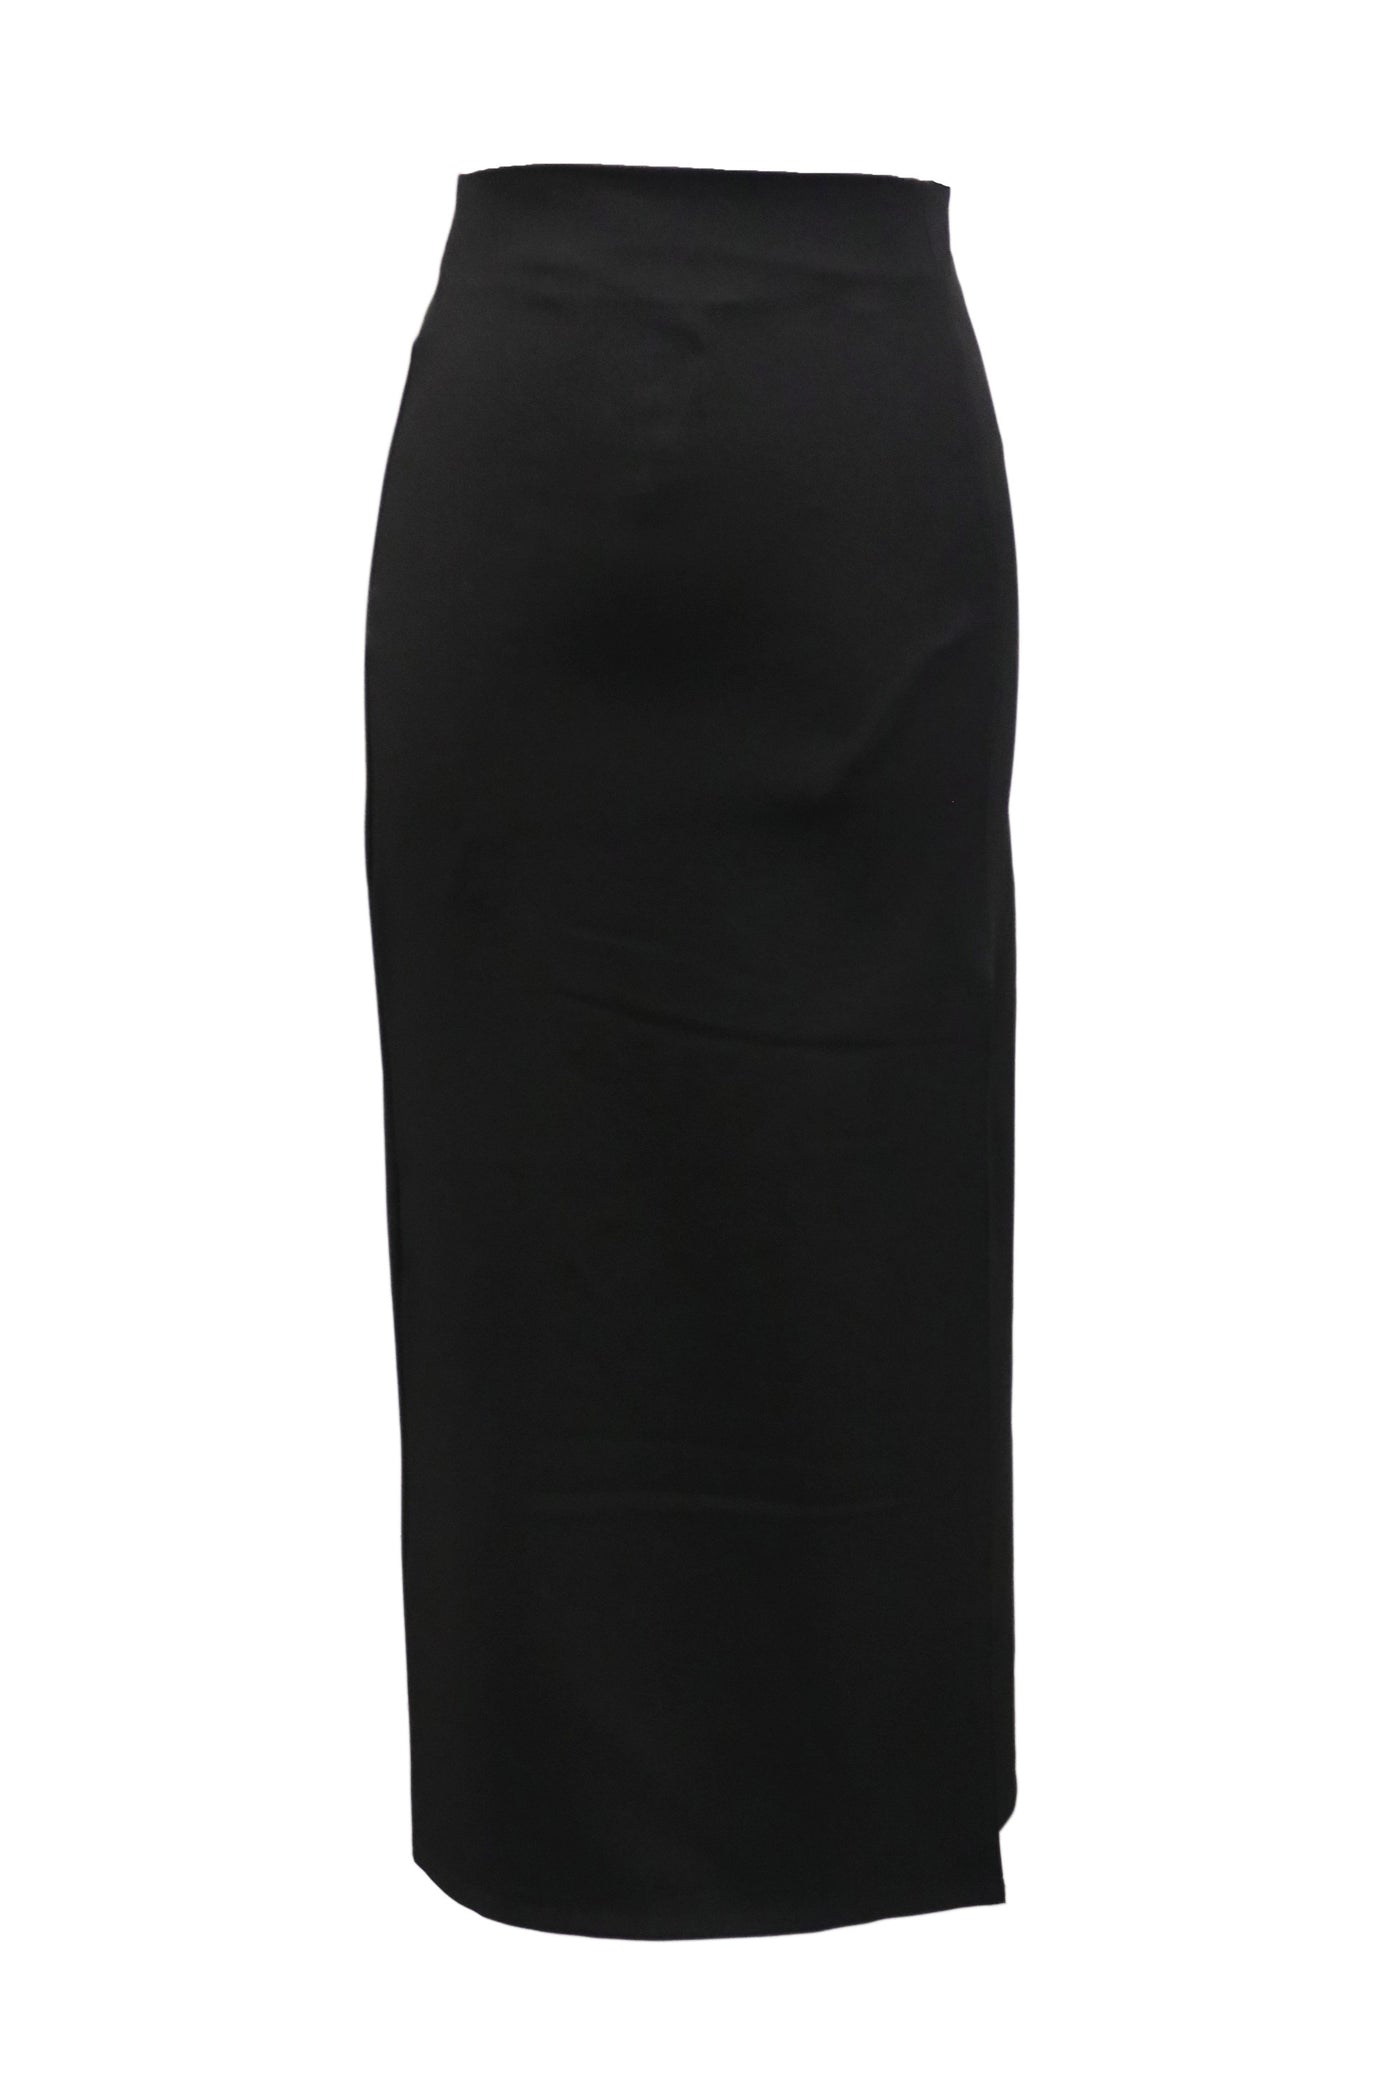 storets.com Jaime Front Slit Midi Skirt